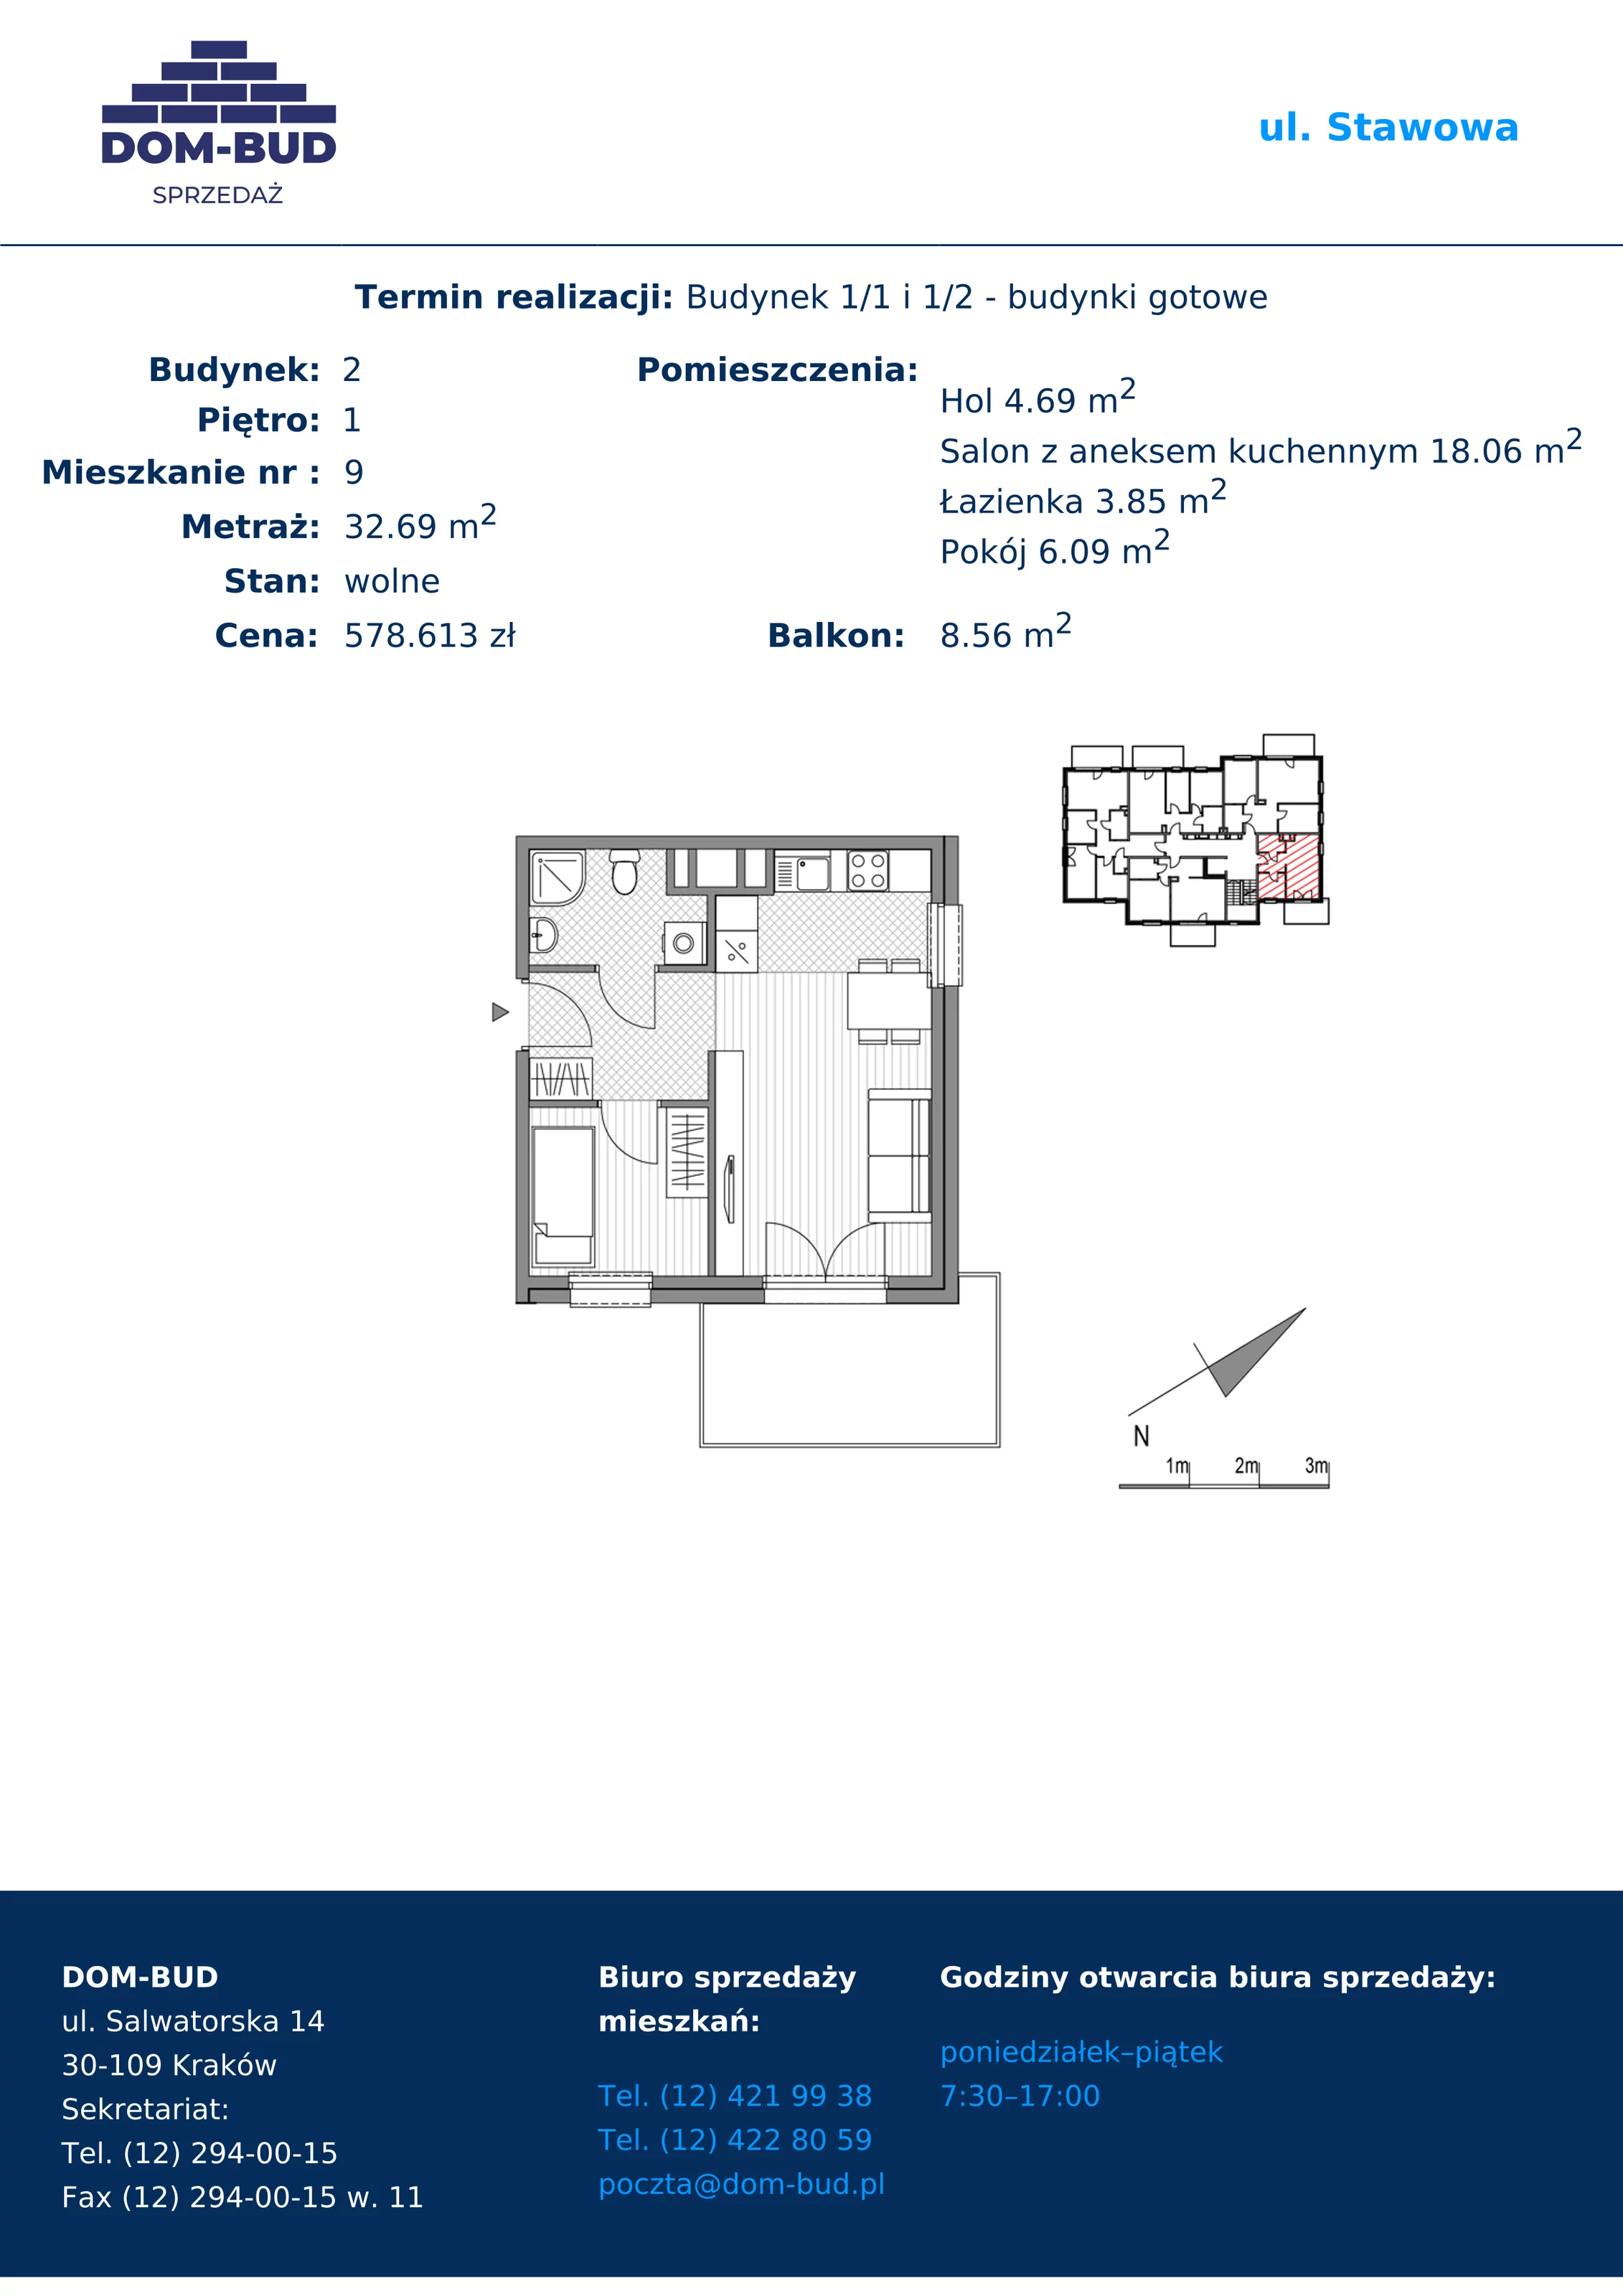 Mieszkanie 32,69 m², piętro 1, oferta nr 1/2-9, ul. Stawowa, Kraków, Prądnik Biały, Bronowice Wielkie, ul. Stawowa 242